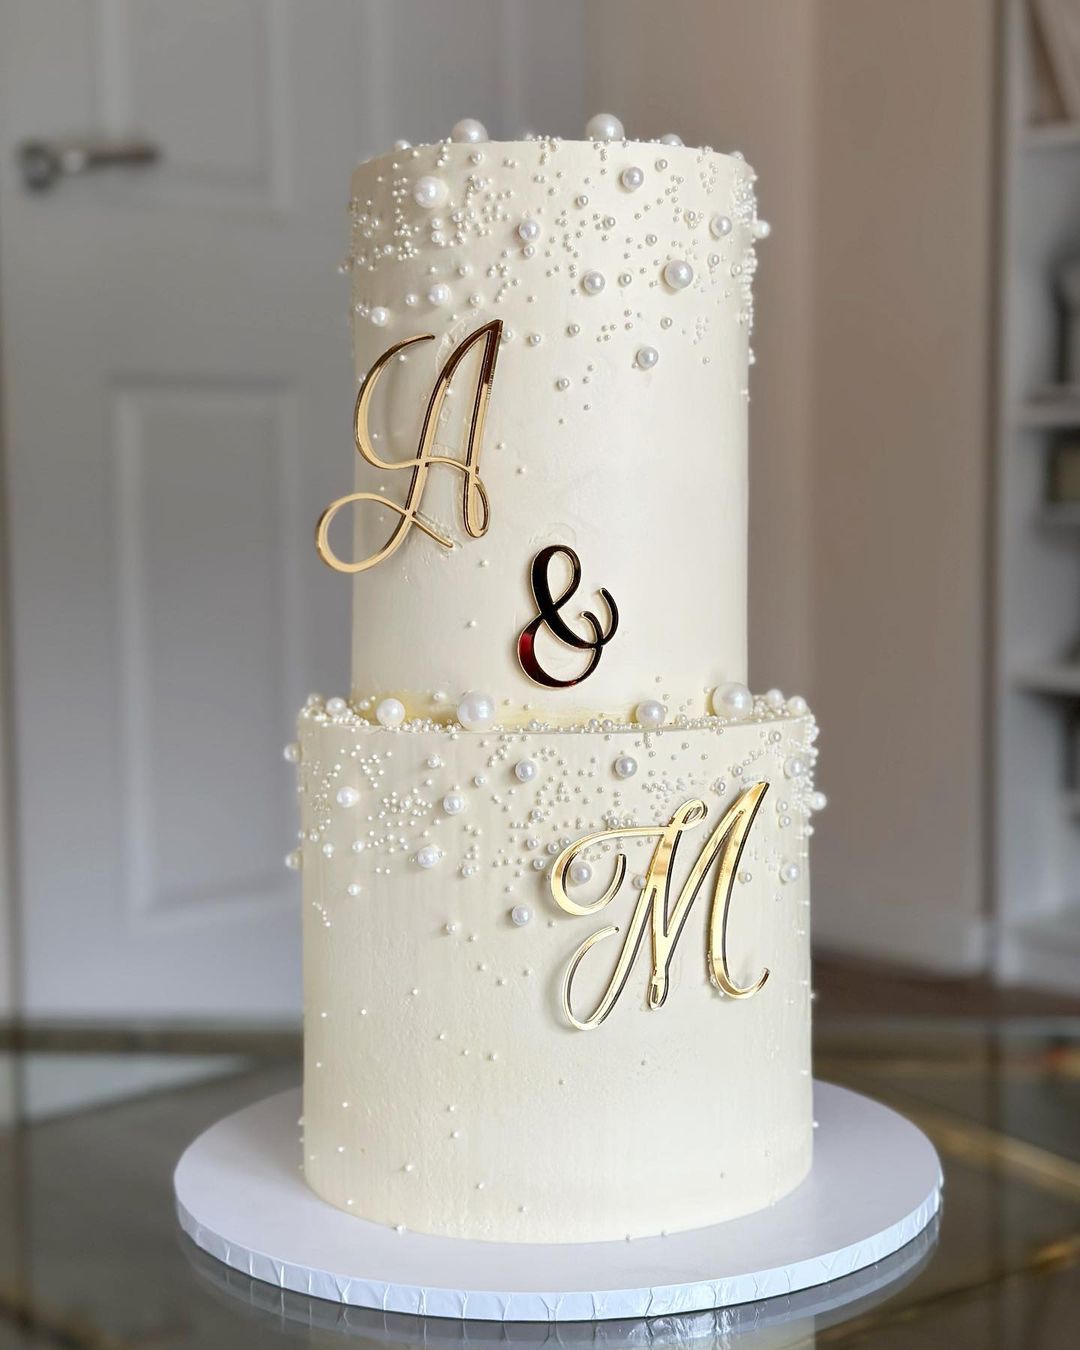 2 tier white pearlwedding cake with gold mirror name sign wedding cake via amelias__cakes